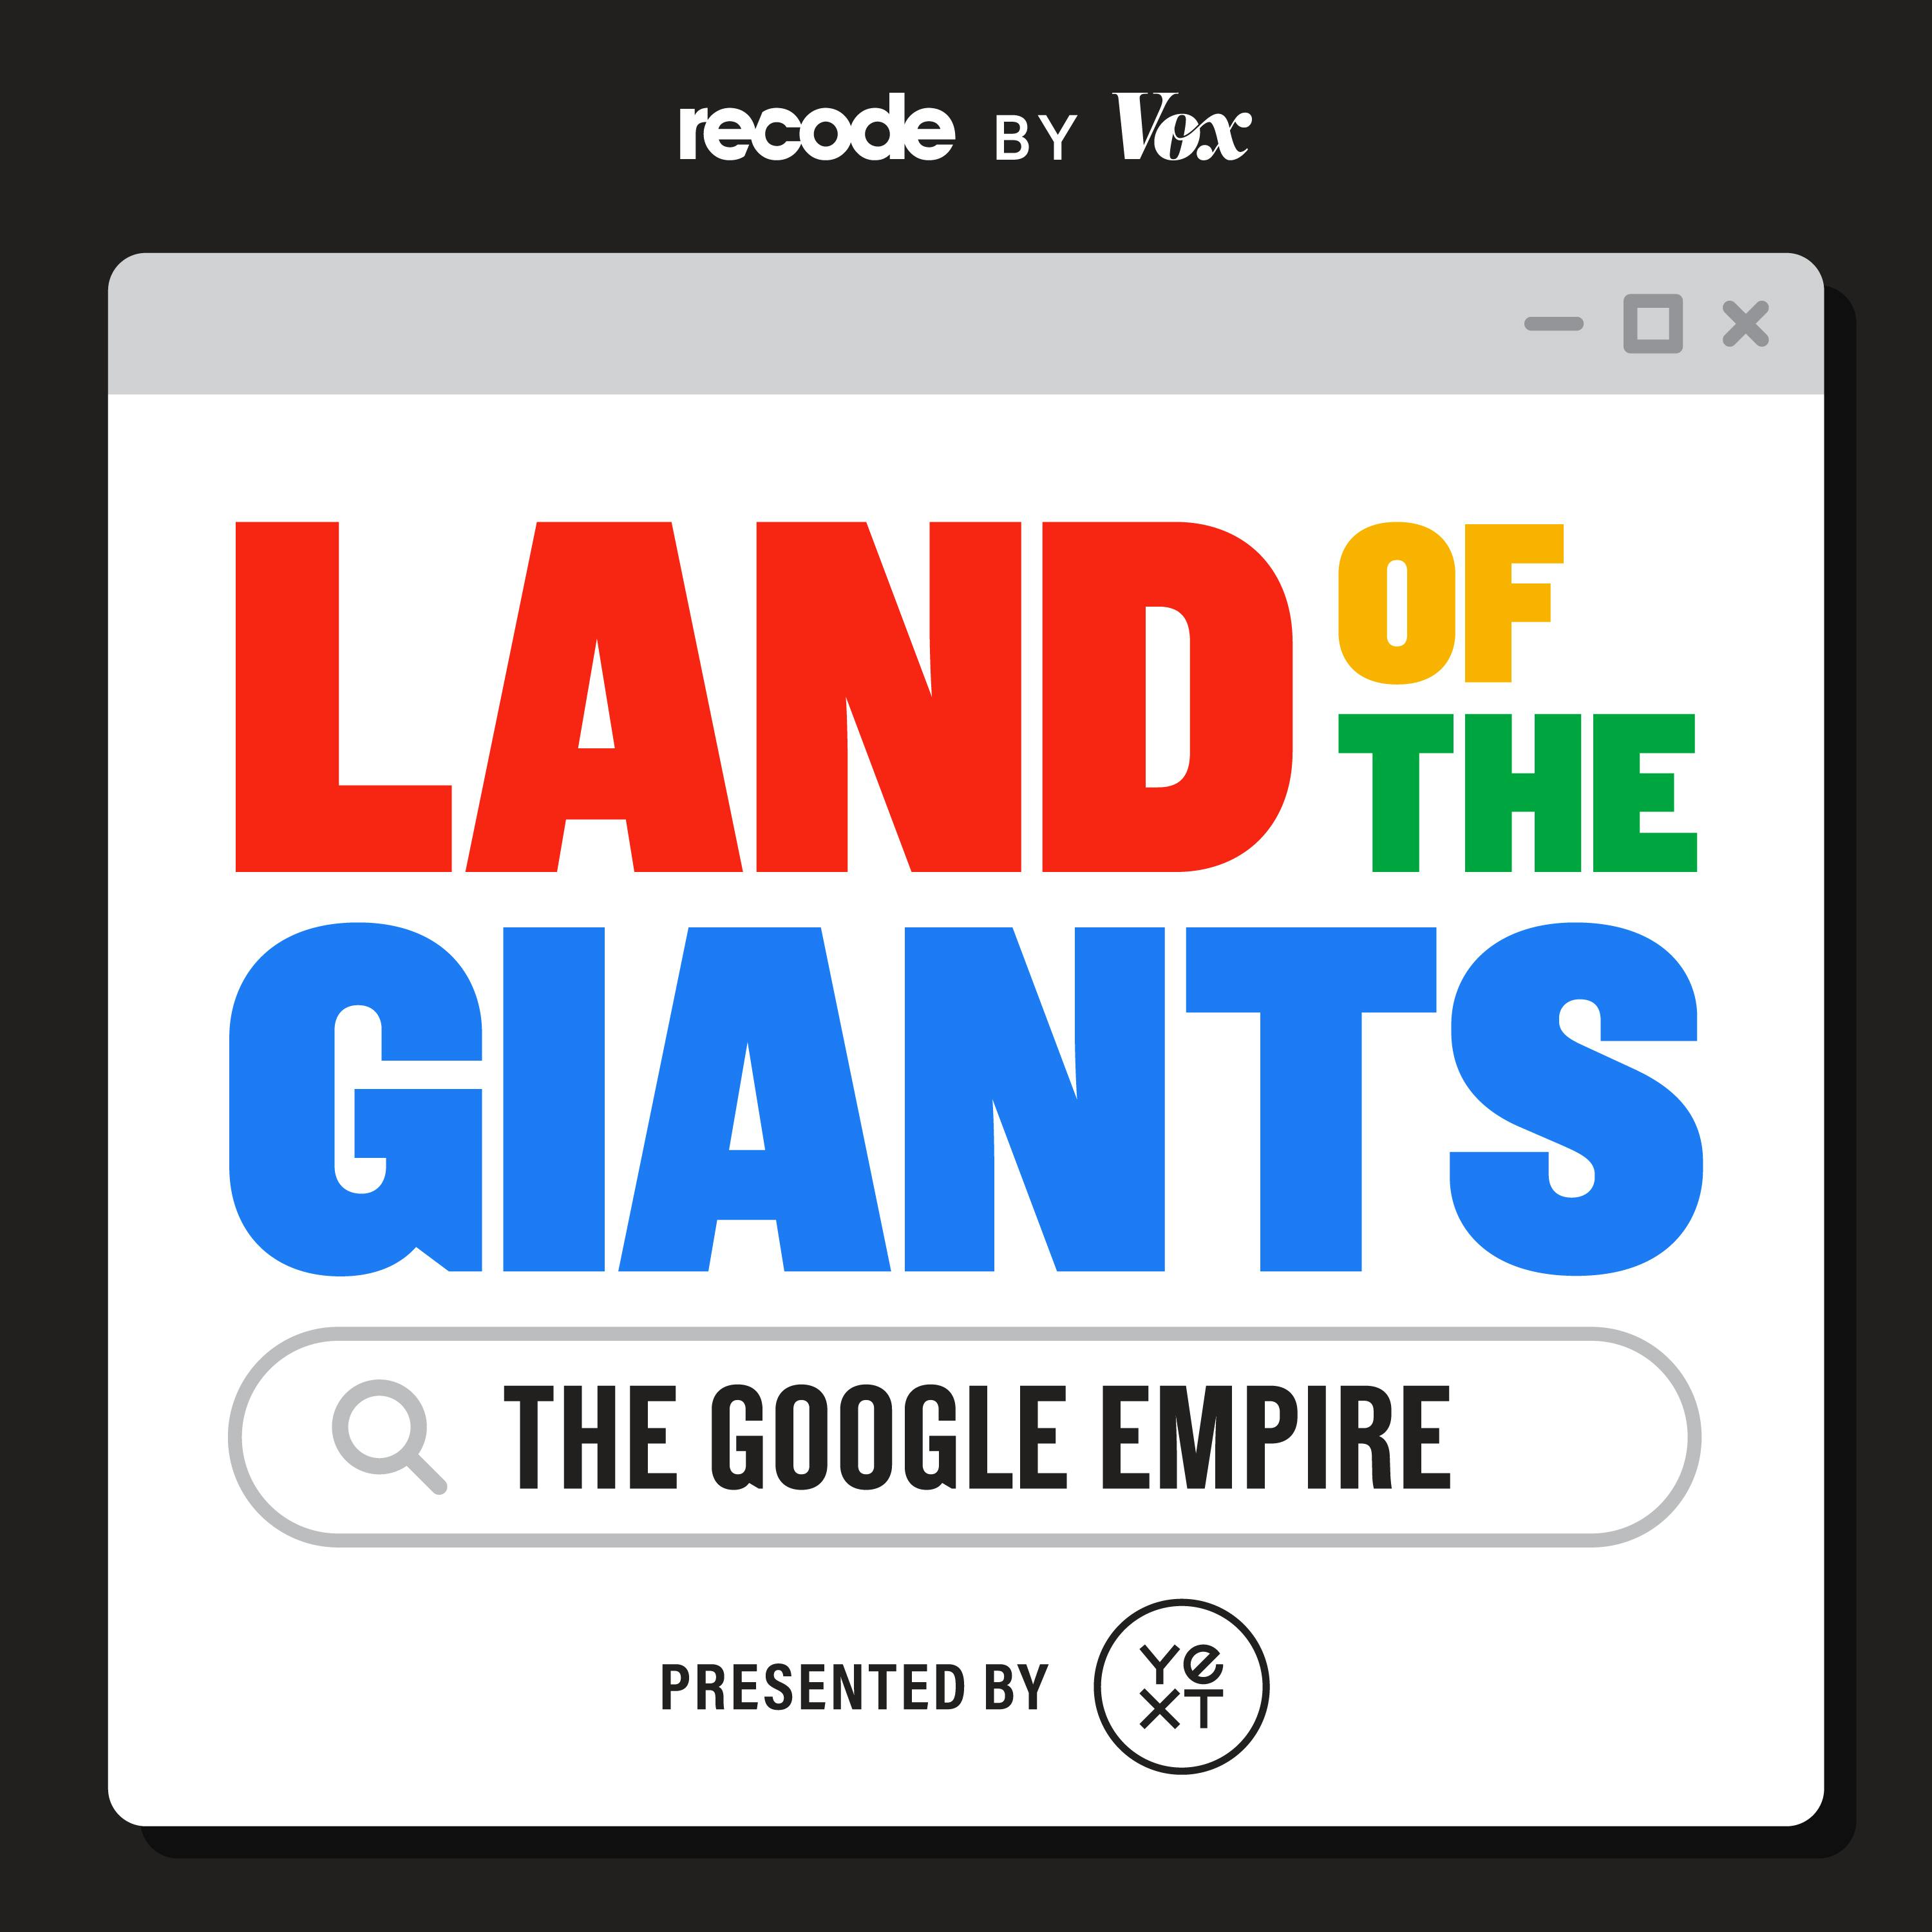 The Google Empire